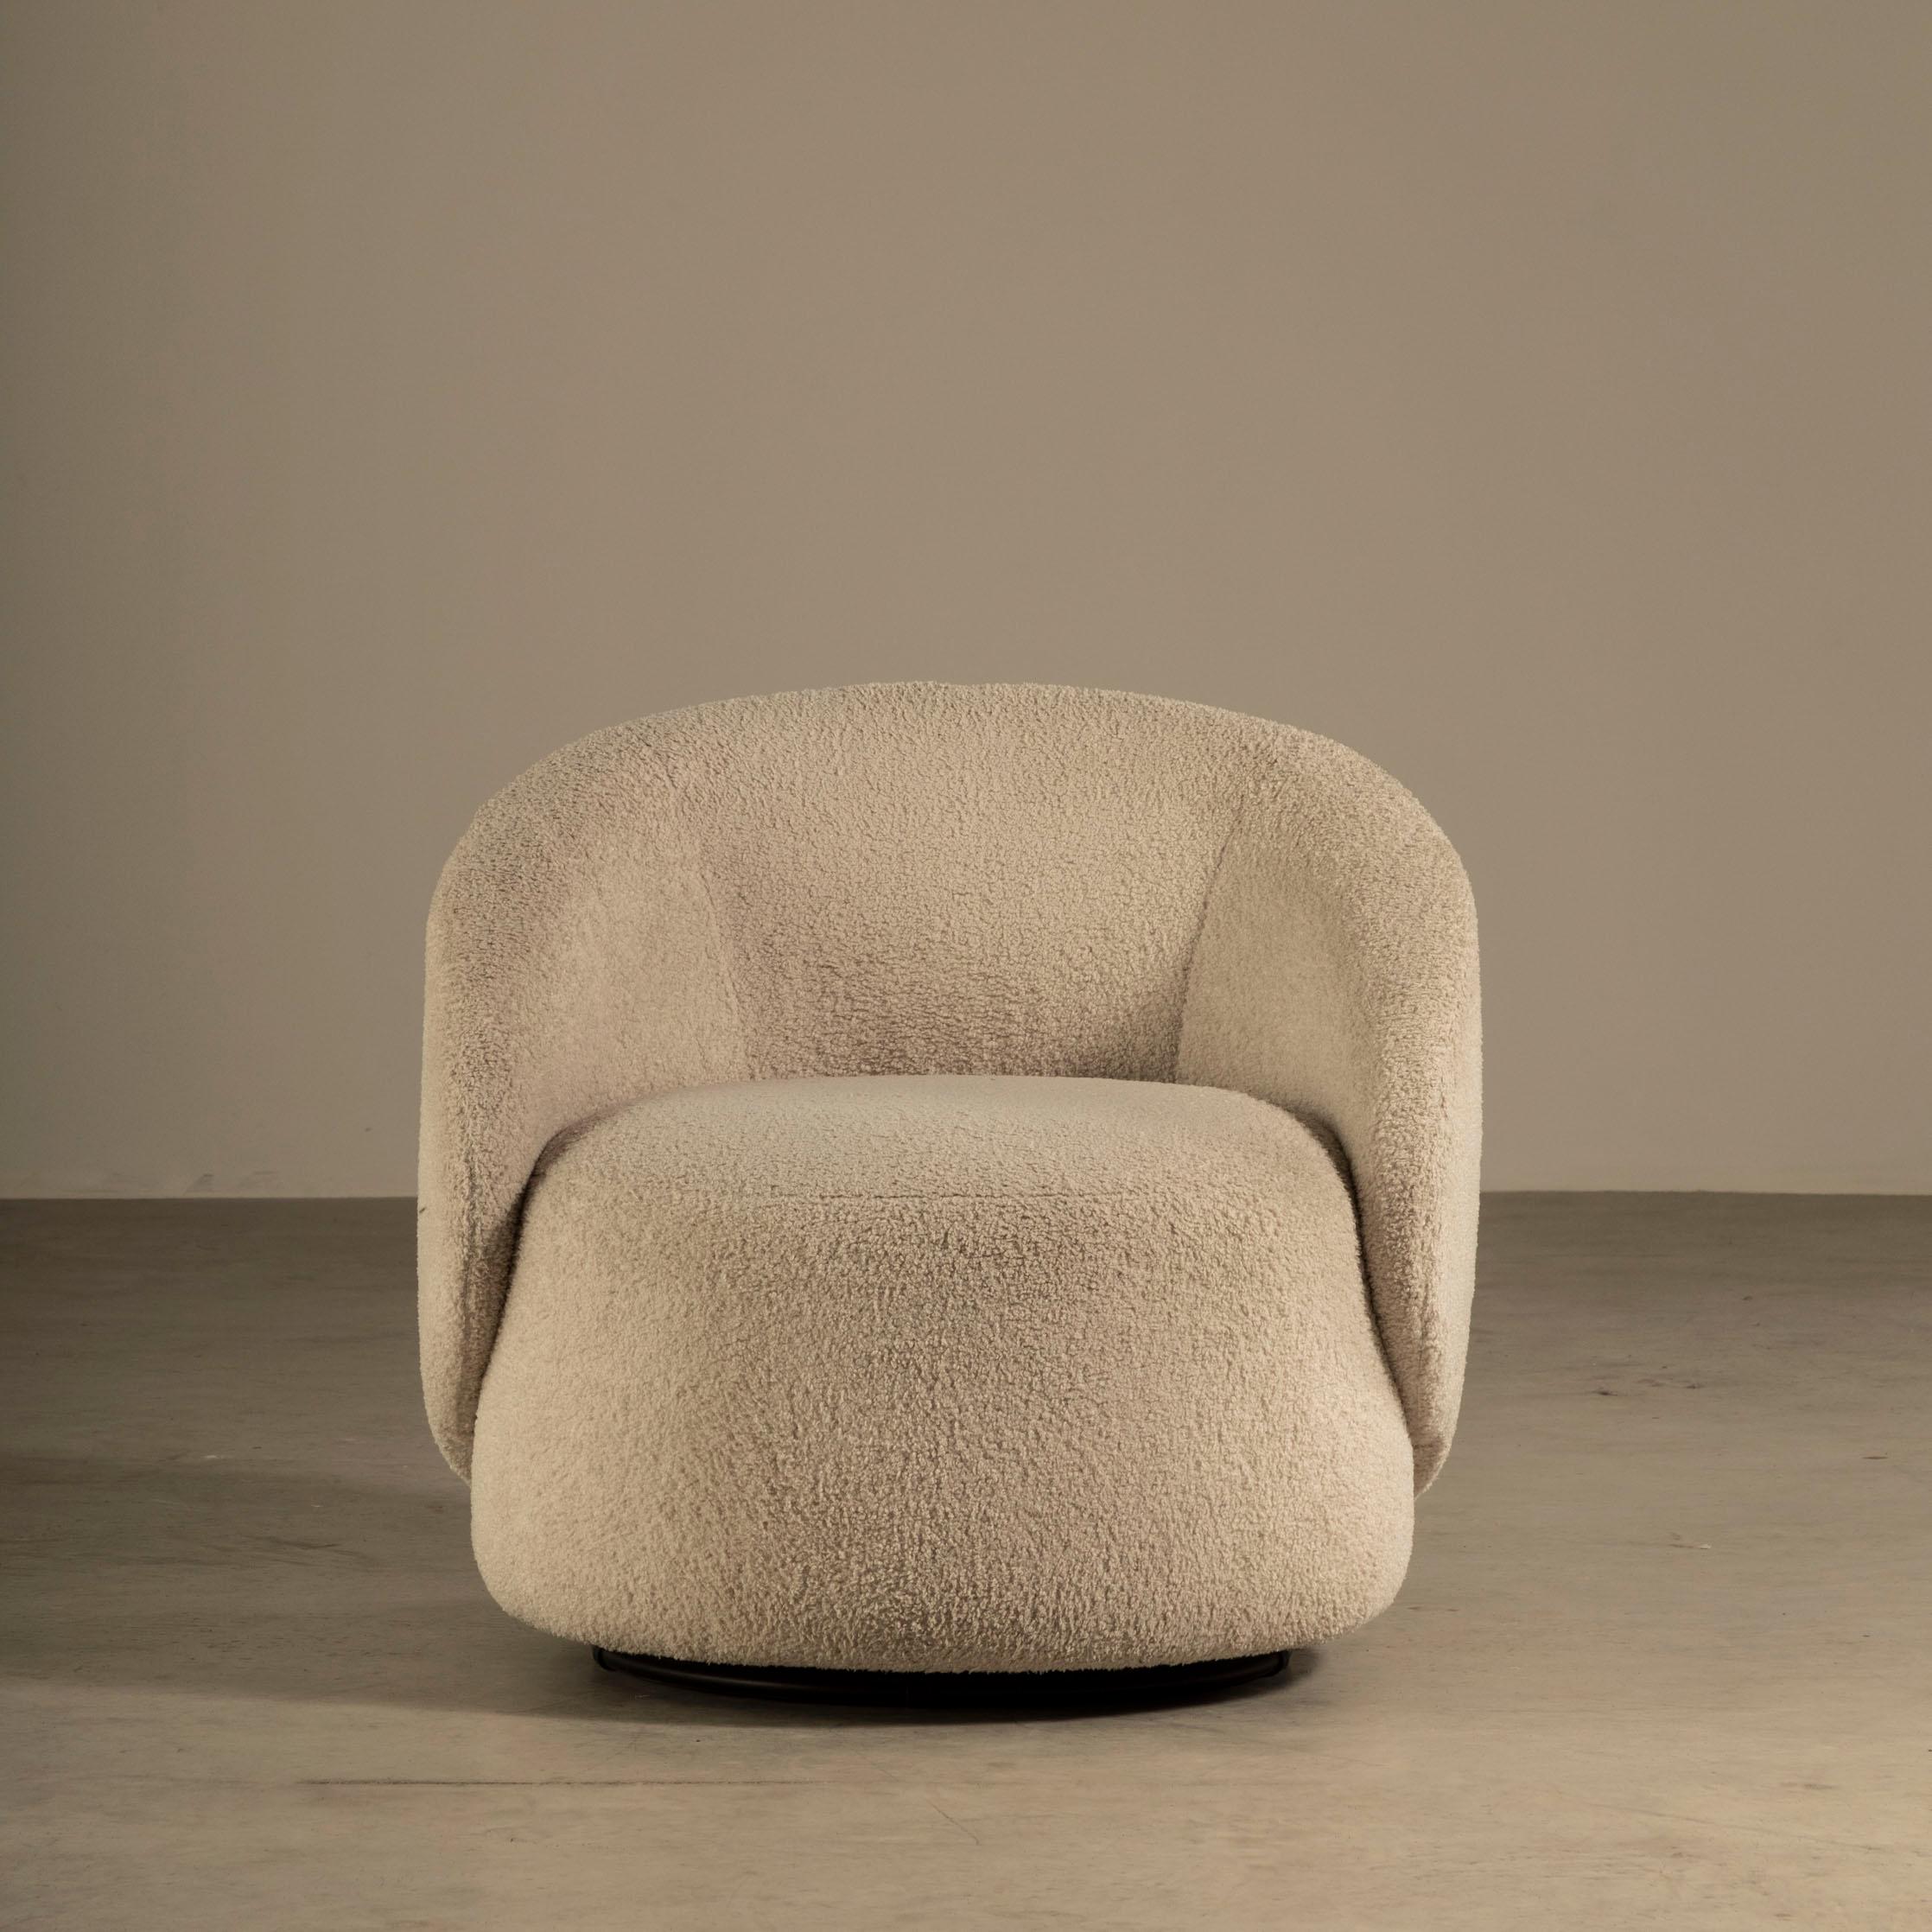 Le fauteuil Orixá est un chef-d'œuvre de design qui met en valeur le style unique et la créativité de Ronald Sasson. Ce fauteuil est une incarnation du confort et de l'esthétique, avec un design sculptural associé à un corps rembourré pour créer une